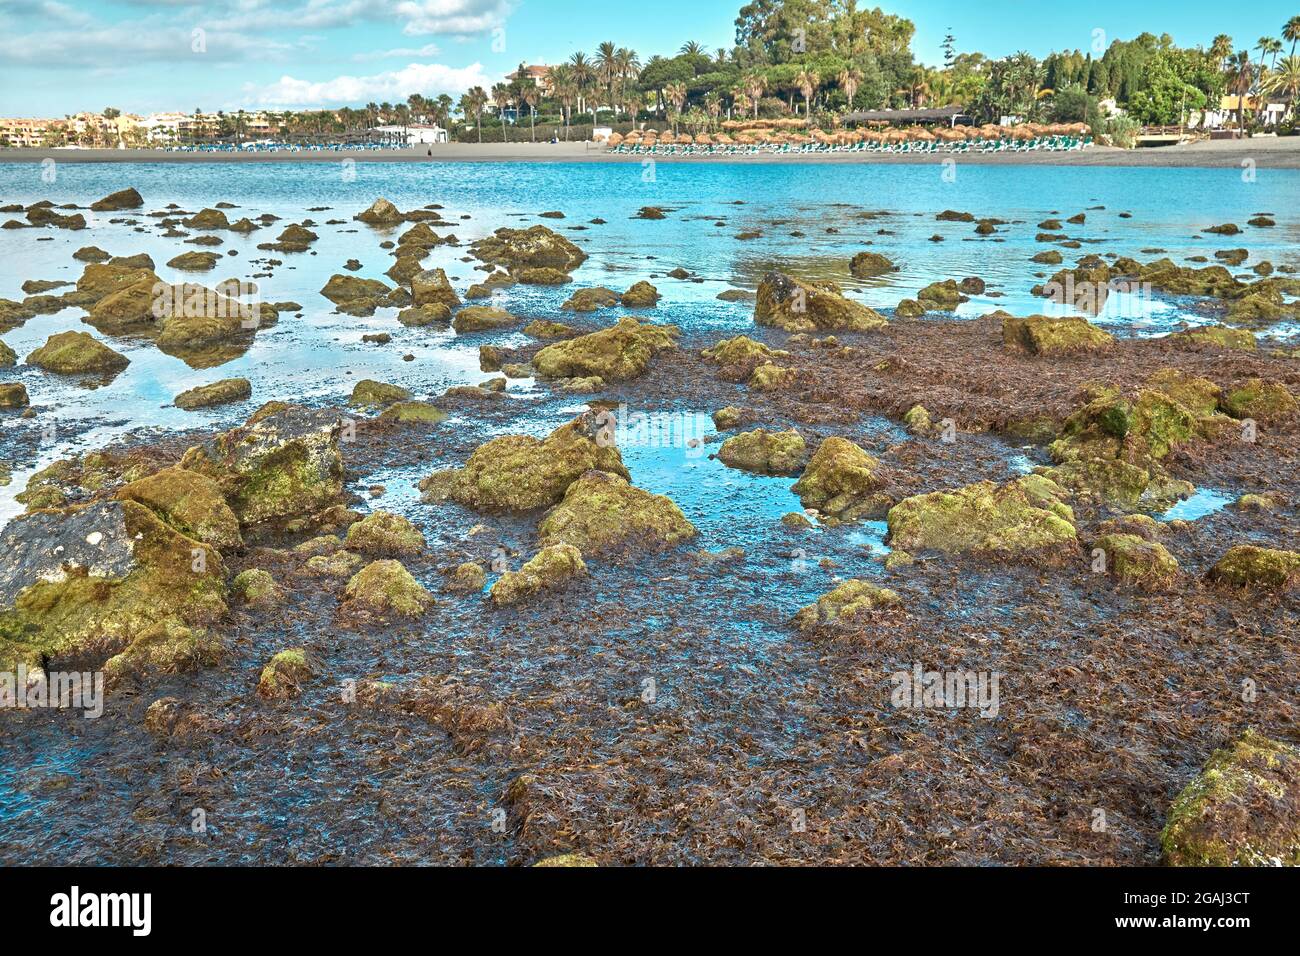 Asiatische Algen, invasive Arten, füllen die Strände (Rugulopterix okamurae) Mittelmeer-Strände Stockfoto